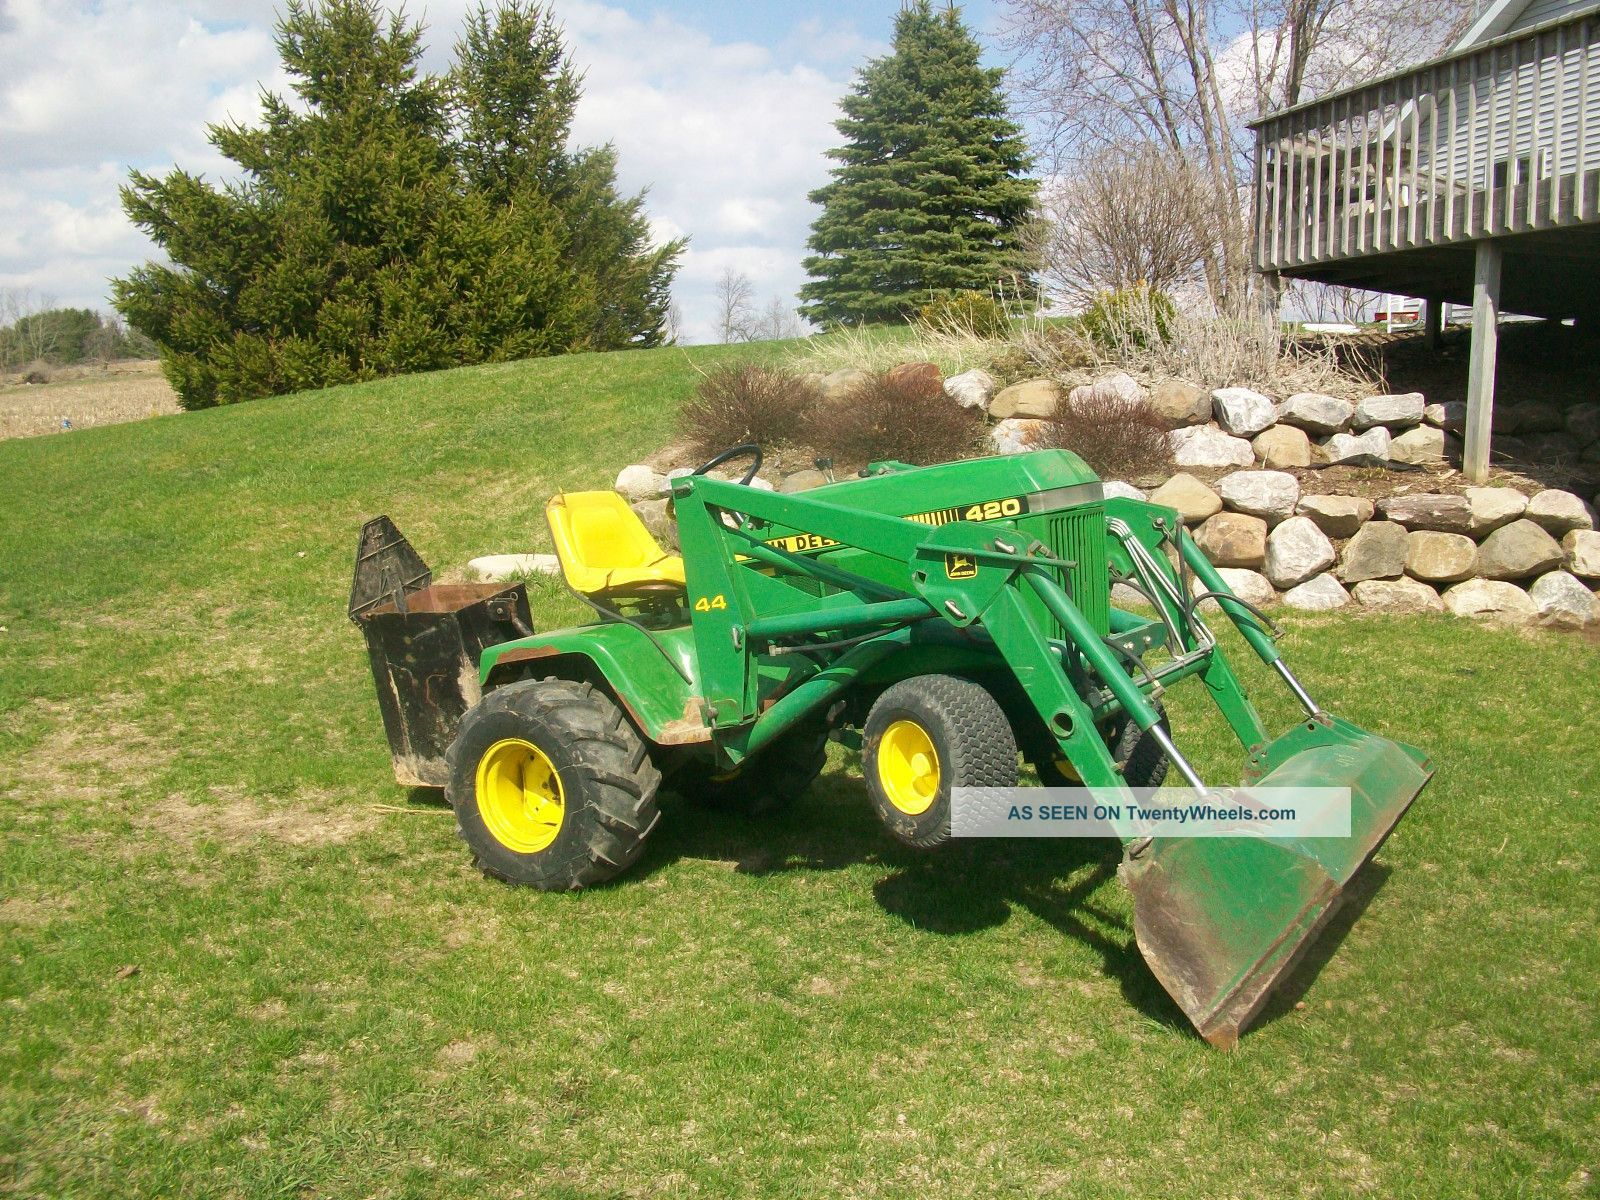 John Deere 420 Garden Tractor | John Deere 420 Garden ...